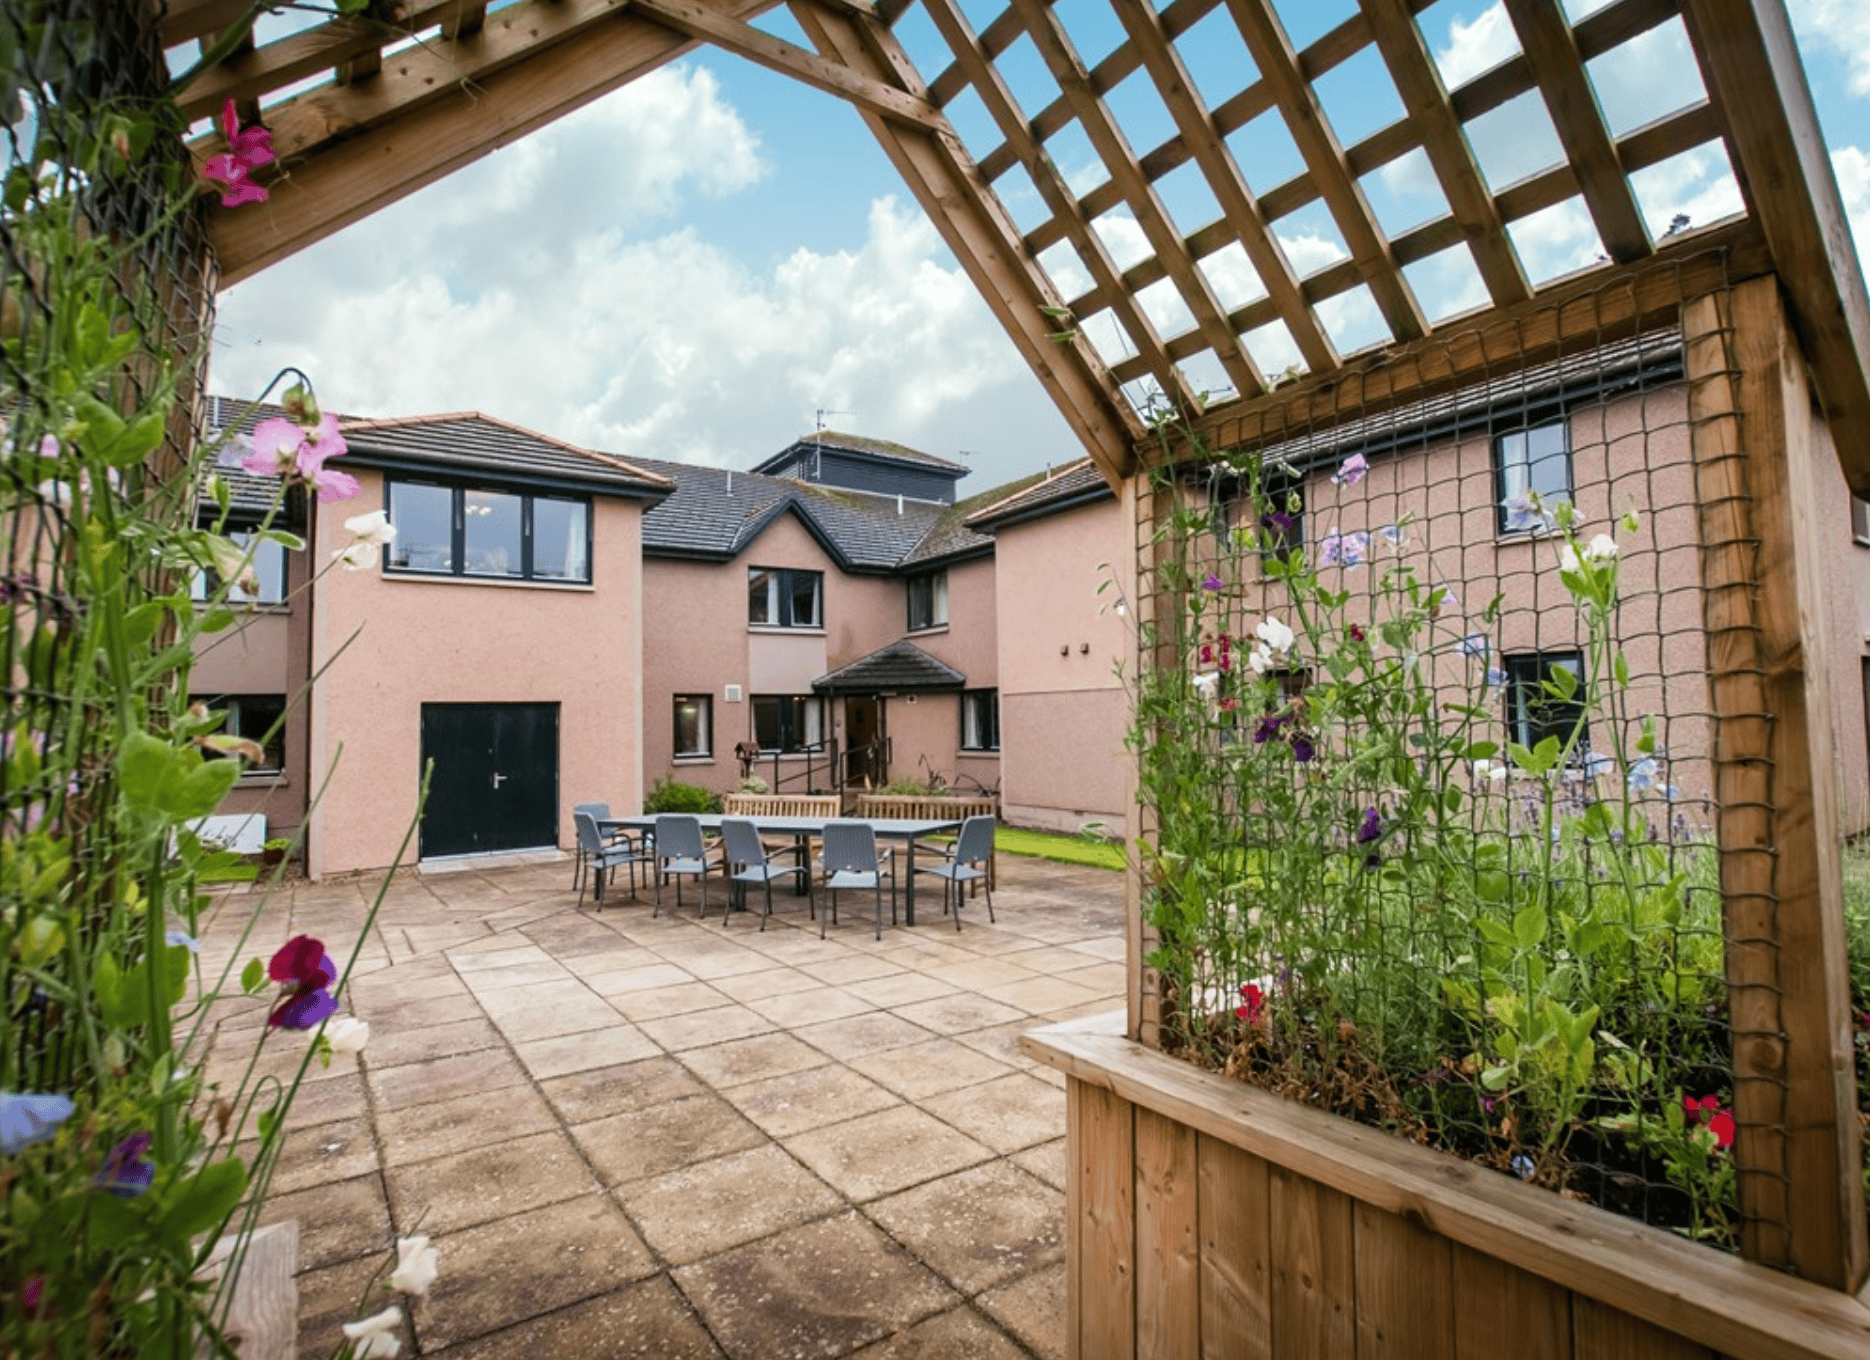 Courtyard at Auchtercrag House/Auchmacoy Lodge Care Home, Ellon, Aberdeenshire